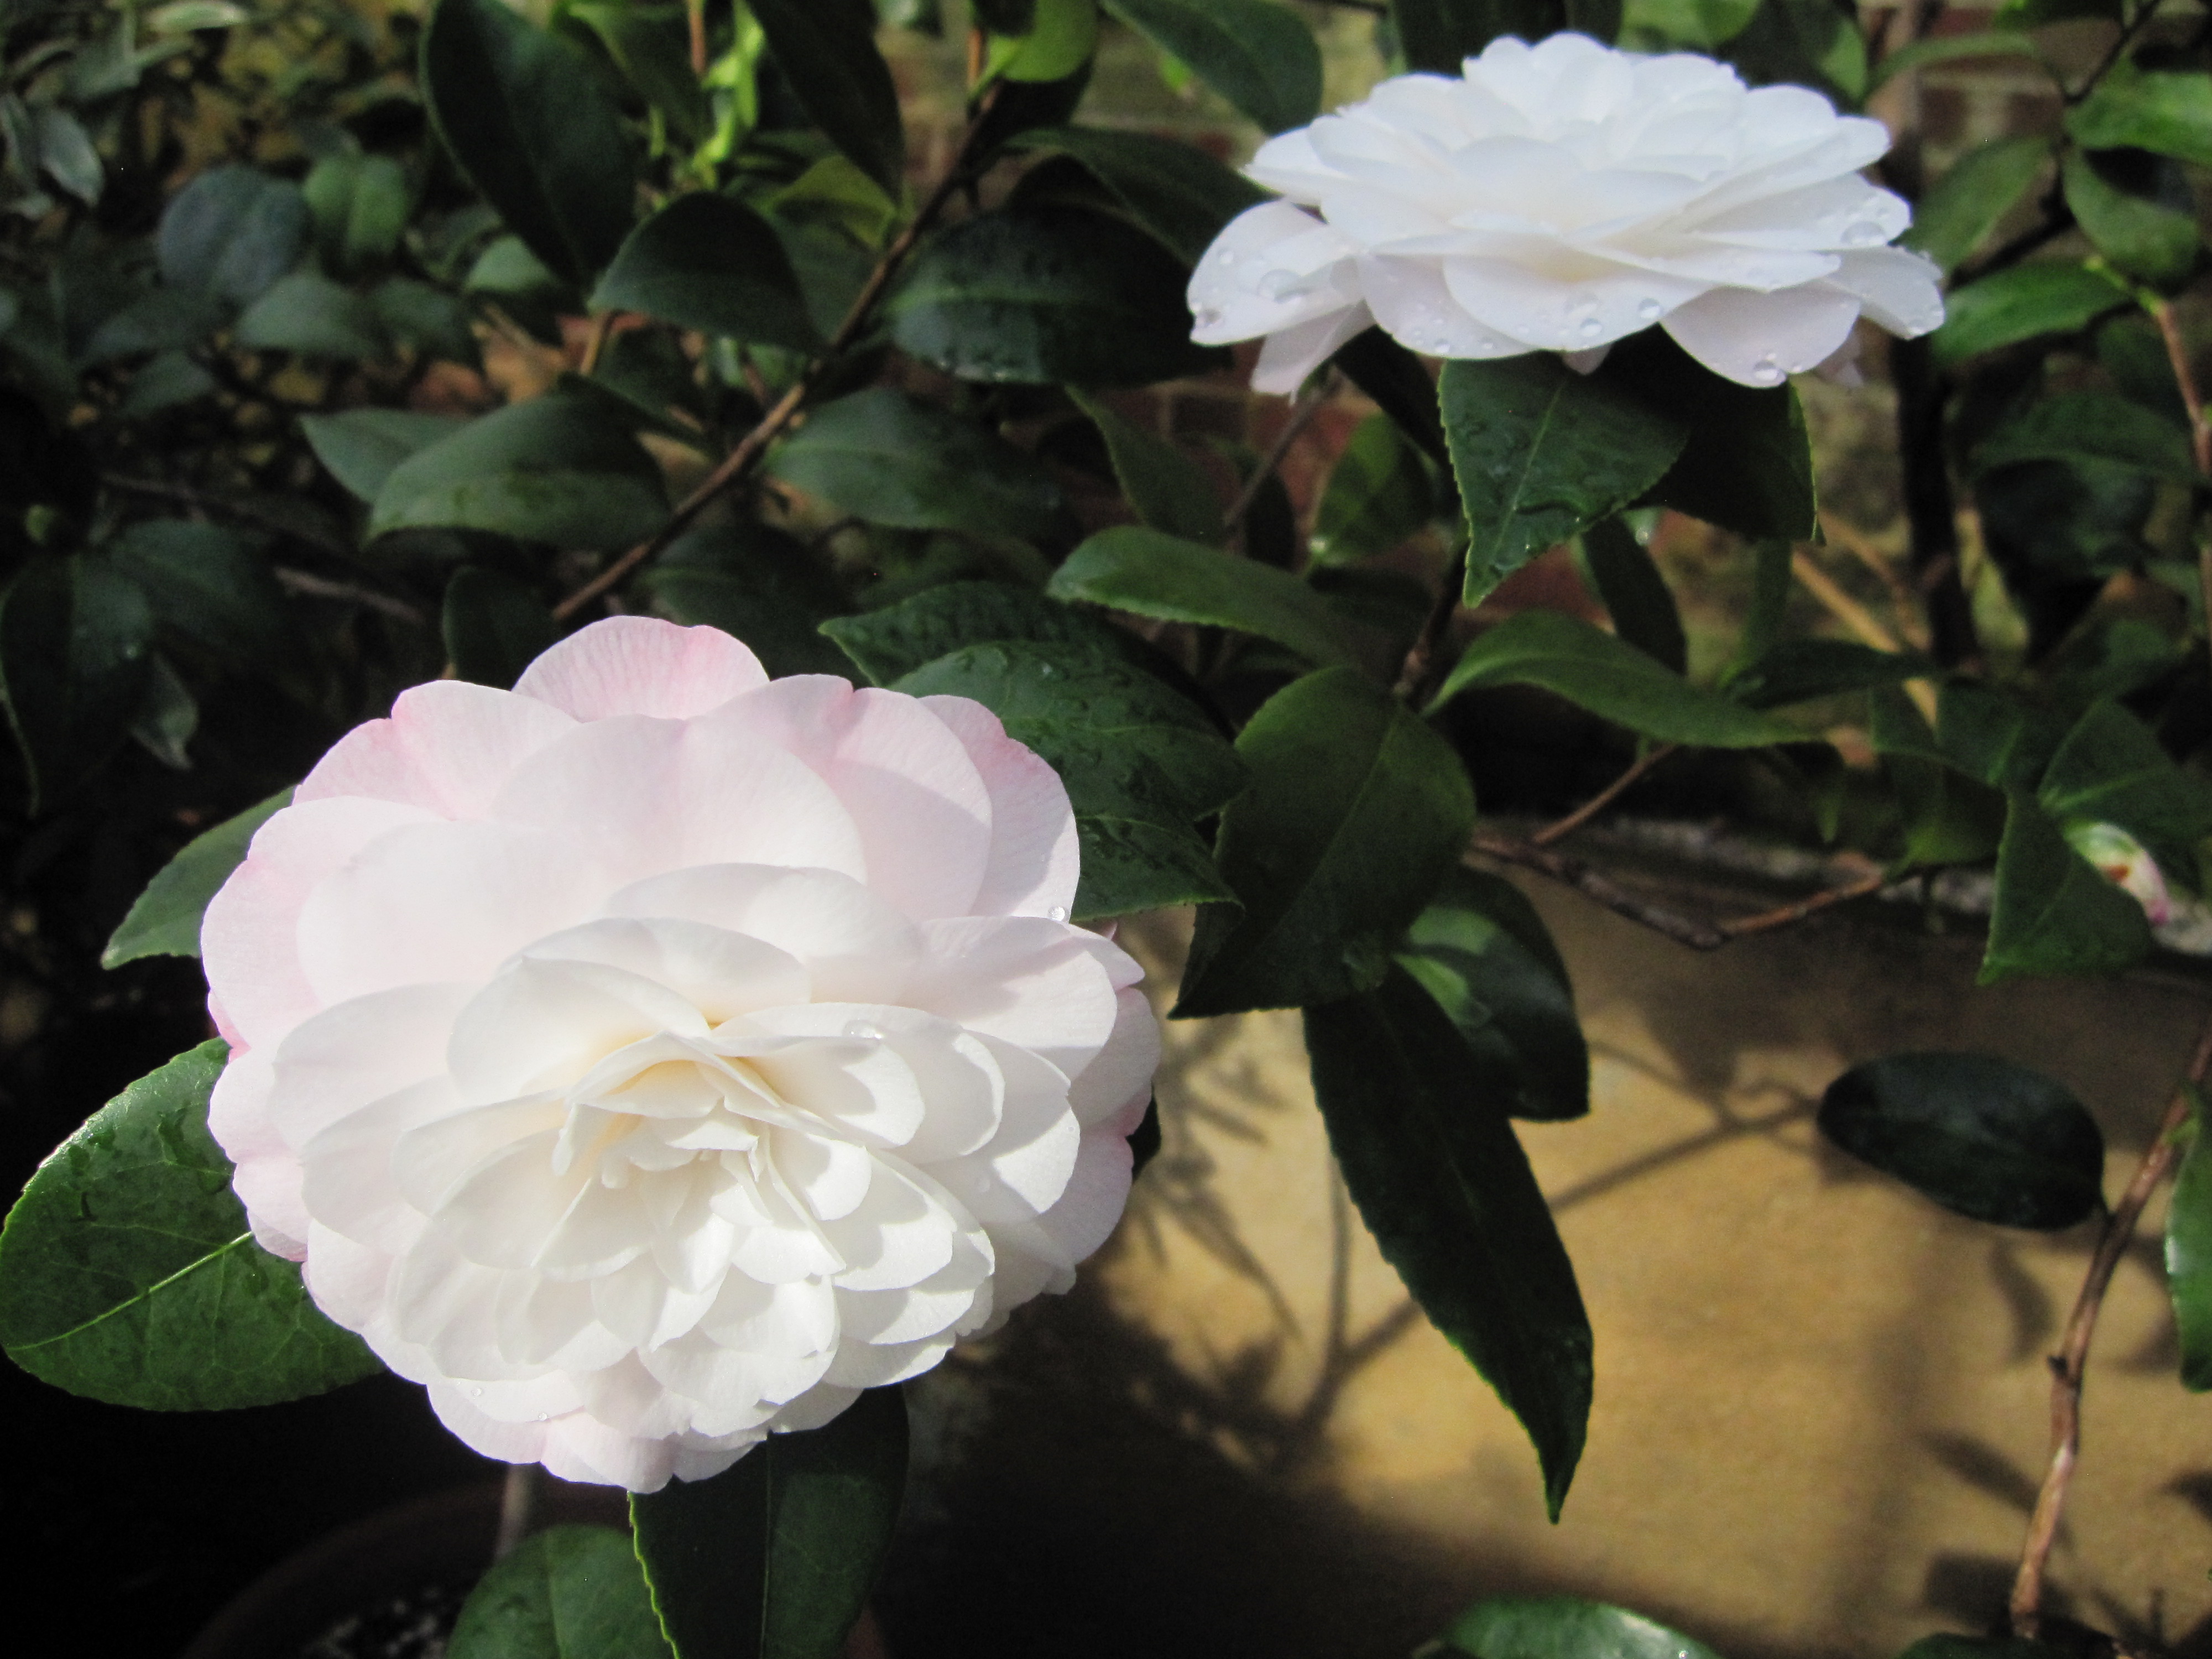 MBovet-white camellia at Lyman Estate